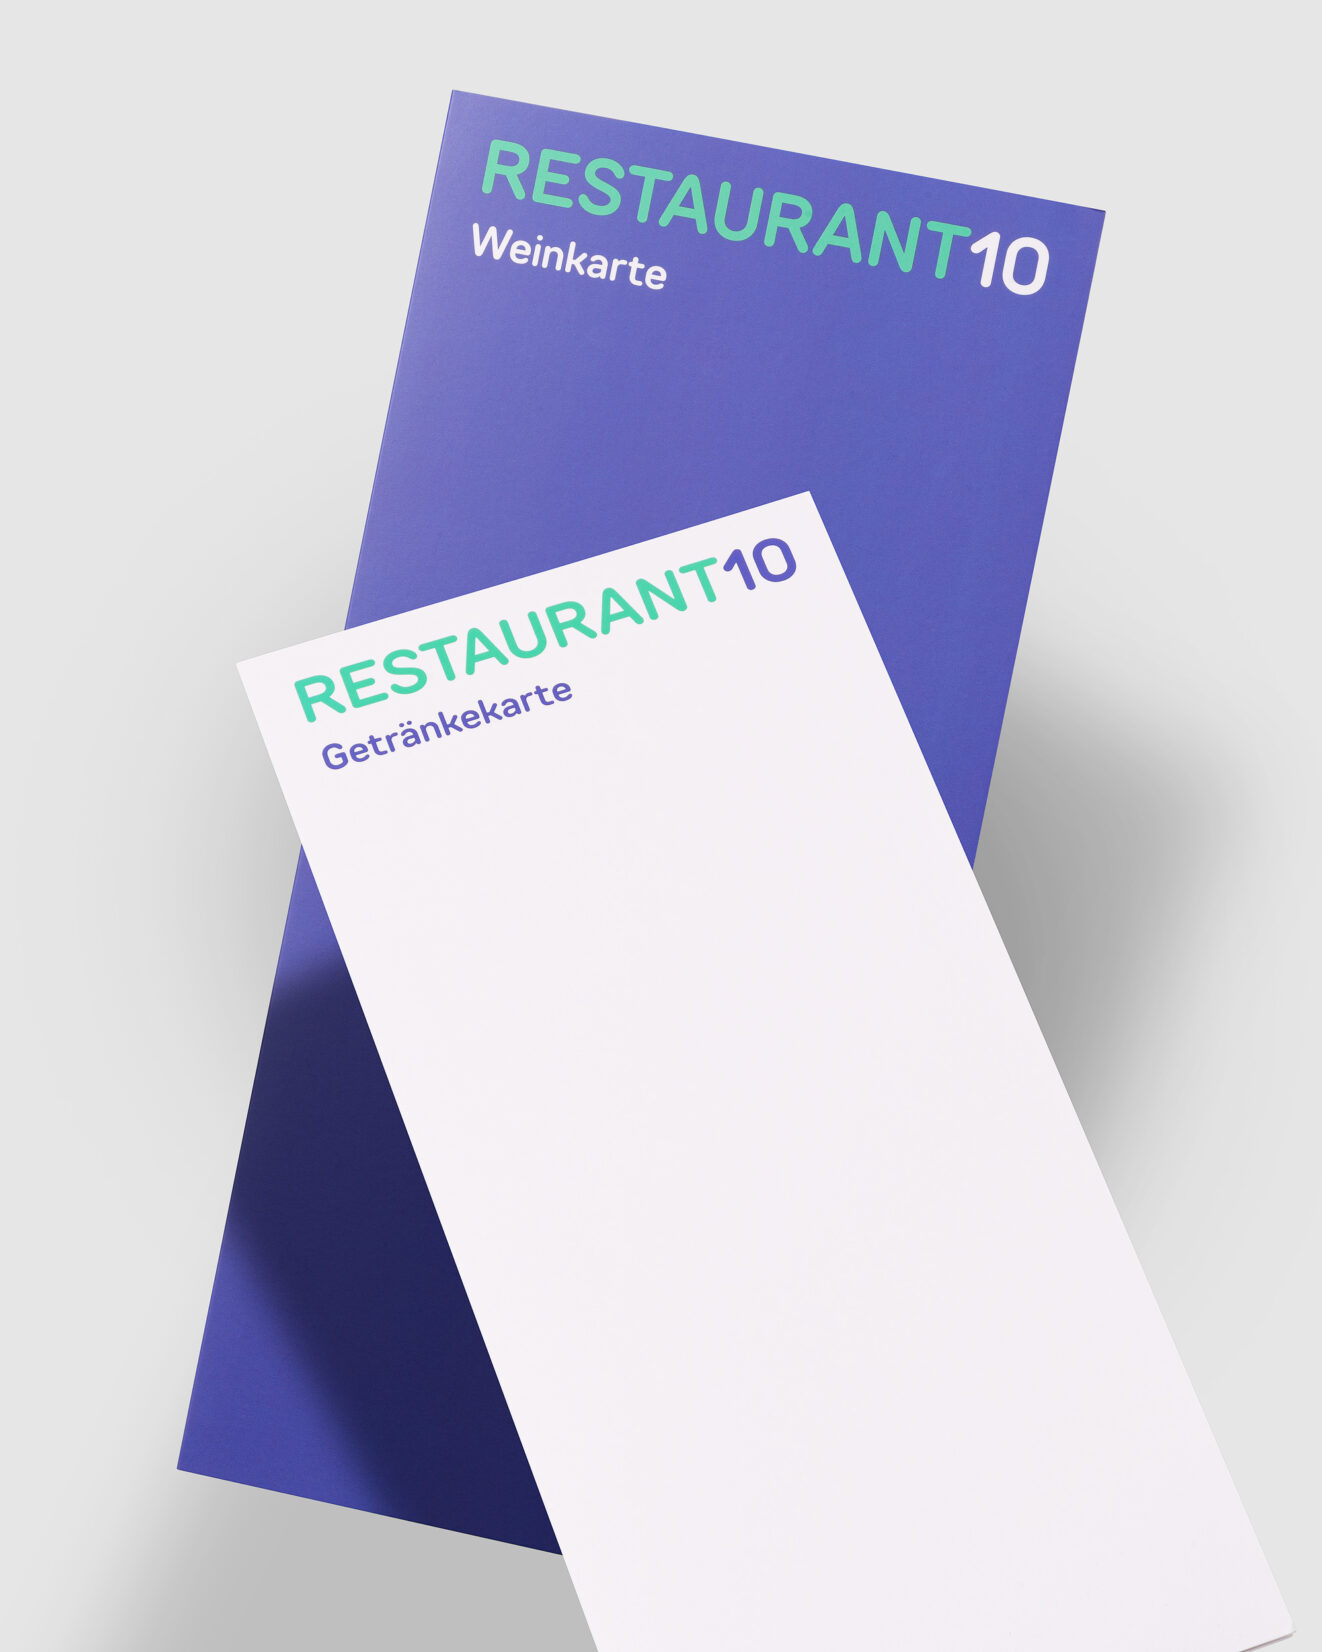 Grafische Gestaltung der Wein- und Getränkekarte des Restaurant 10. Reduziert auf das Logo und die Beschriftung des Inhalts.